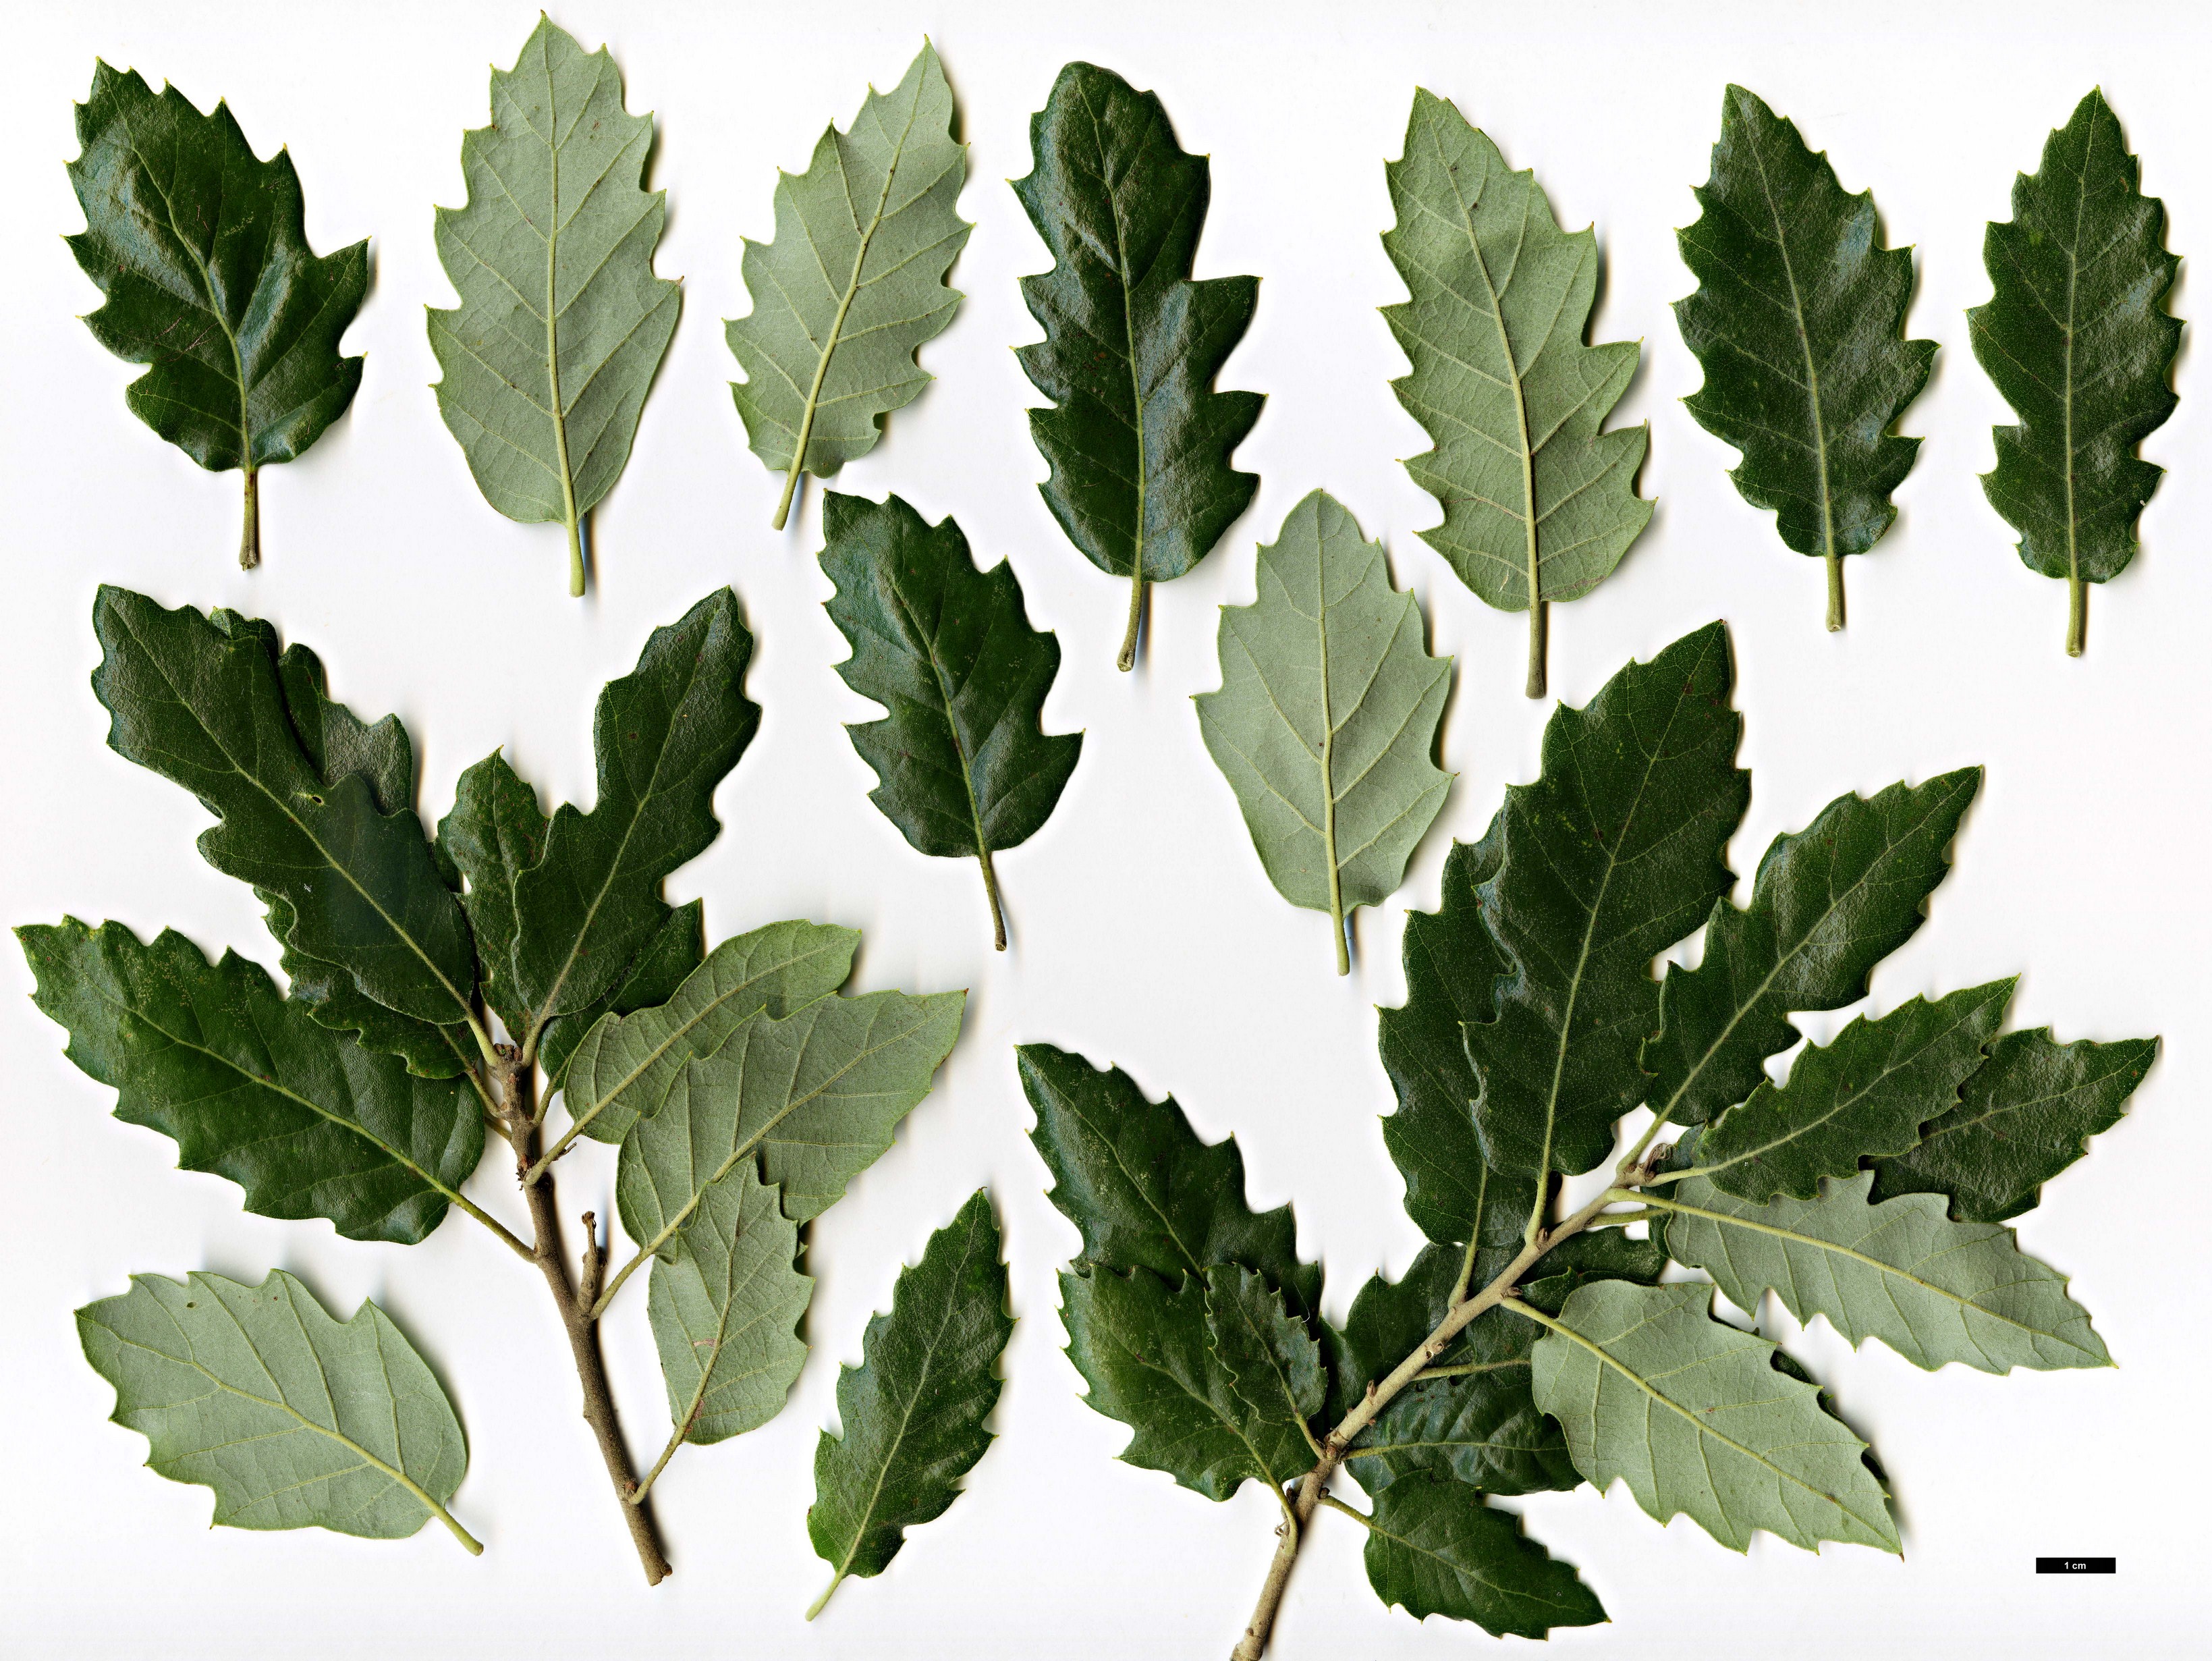 High resolution image: Family: Fagaceae - Genus: Quercus - Taxon: ×crenata - SpeciesSub: 'Fulhamensis' (Q.cerris × Q.suber)